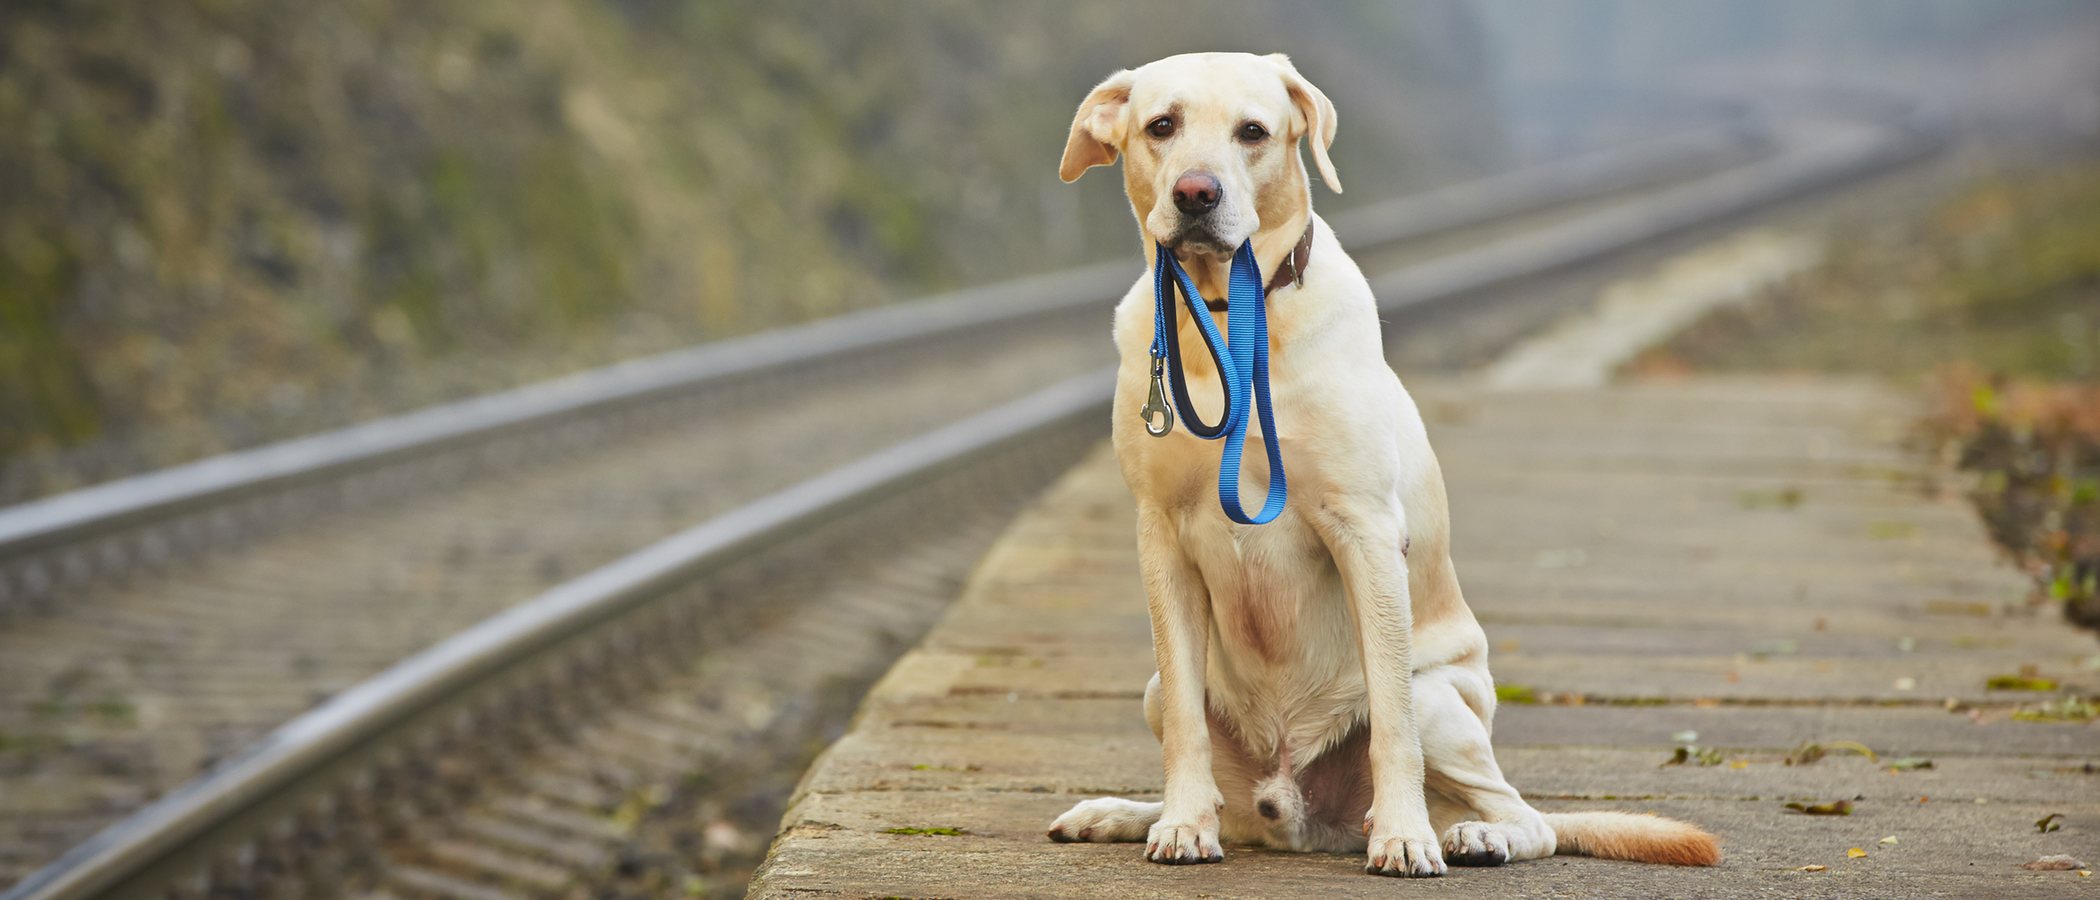 Esta aplicación ayuda a buscar perros perdidos gracias a la Inteligencia Artificial